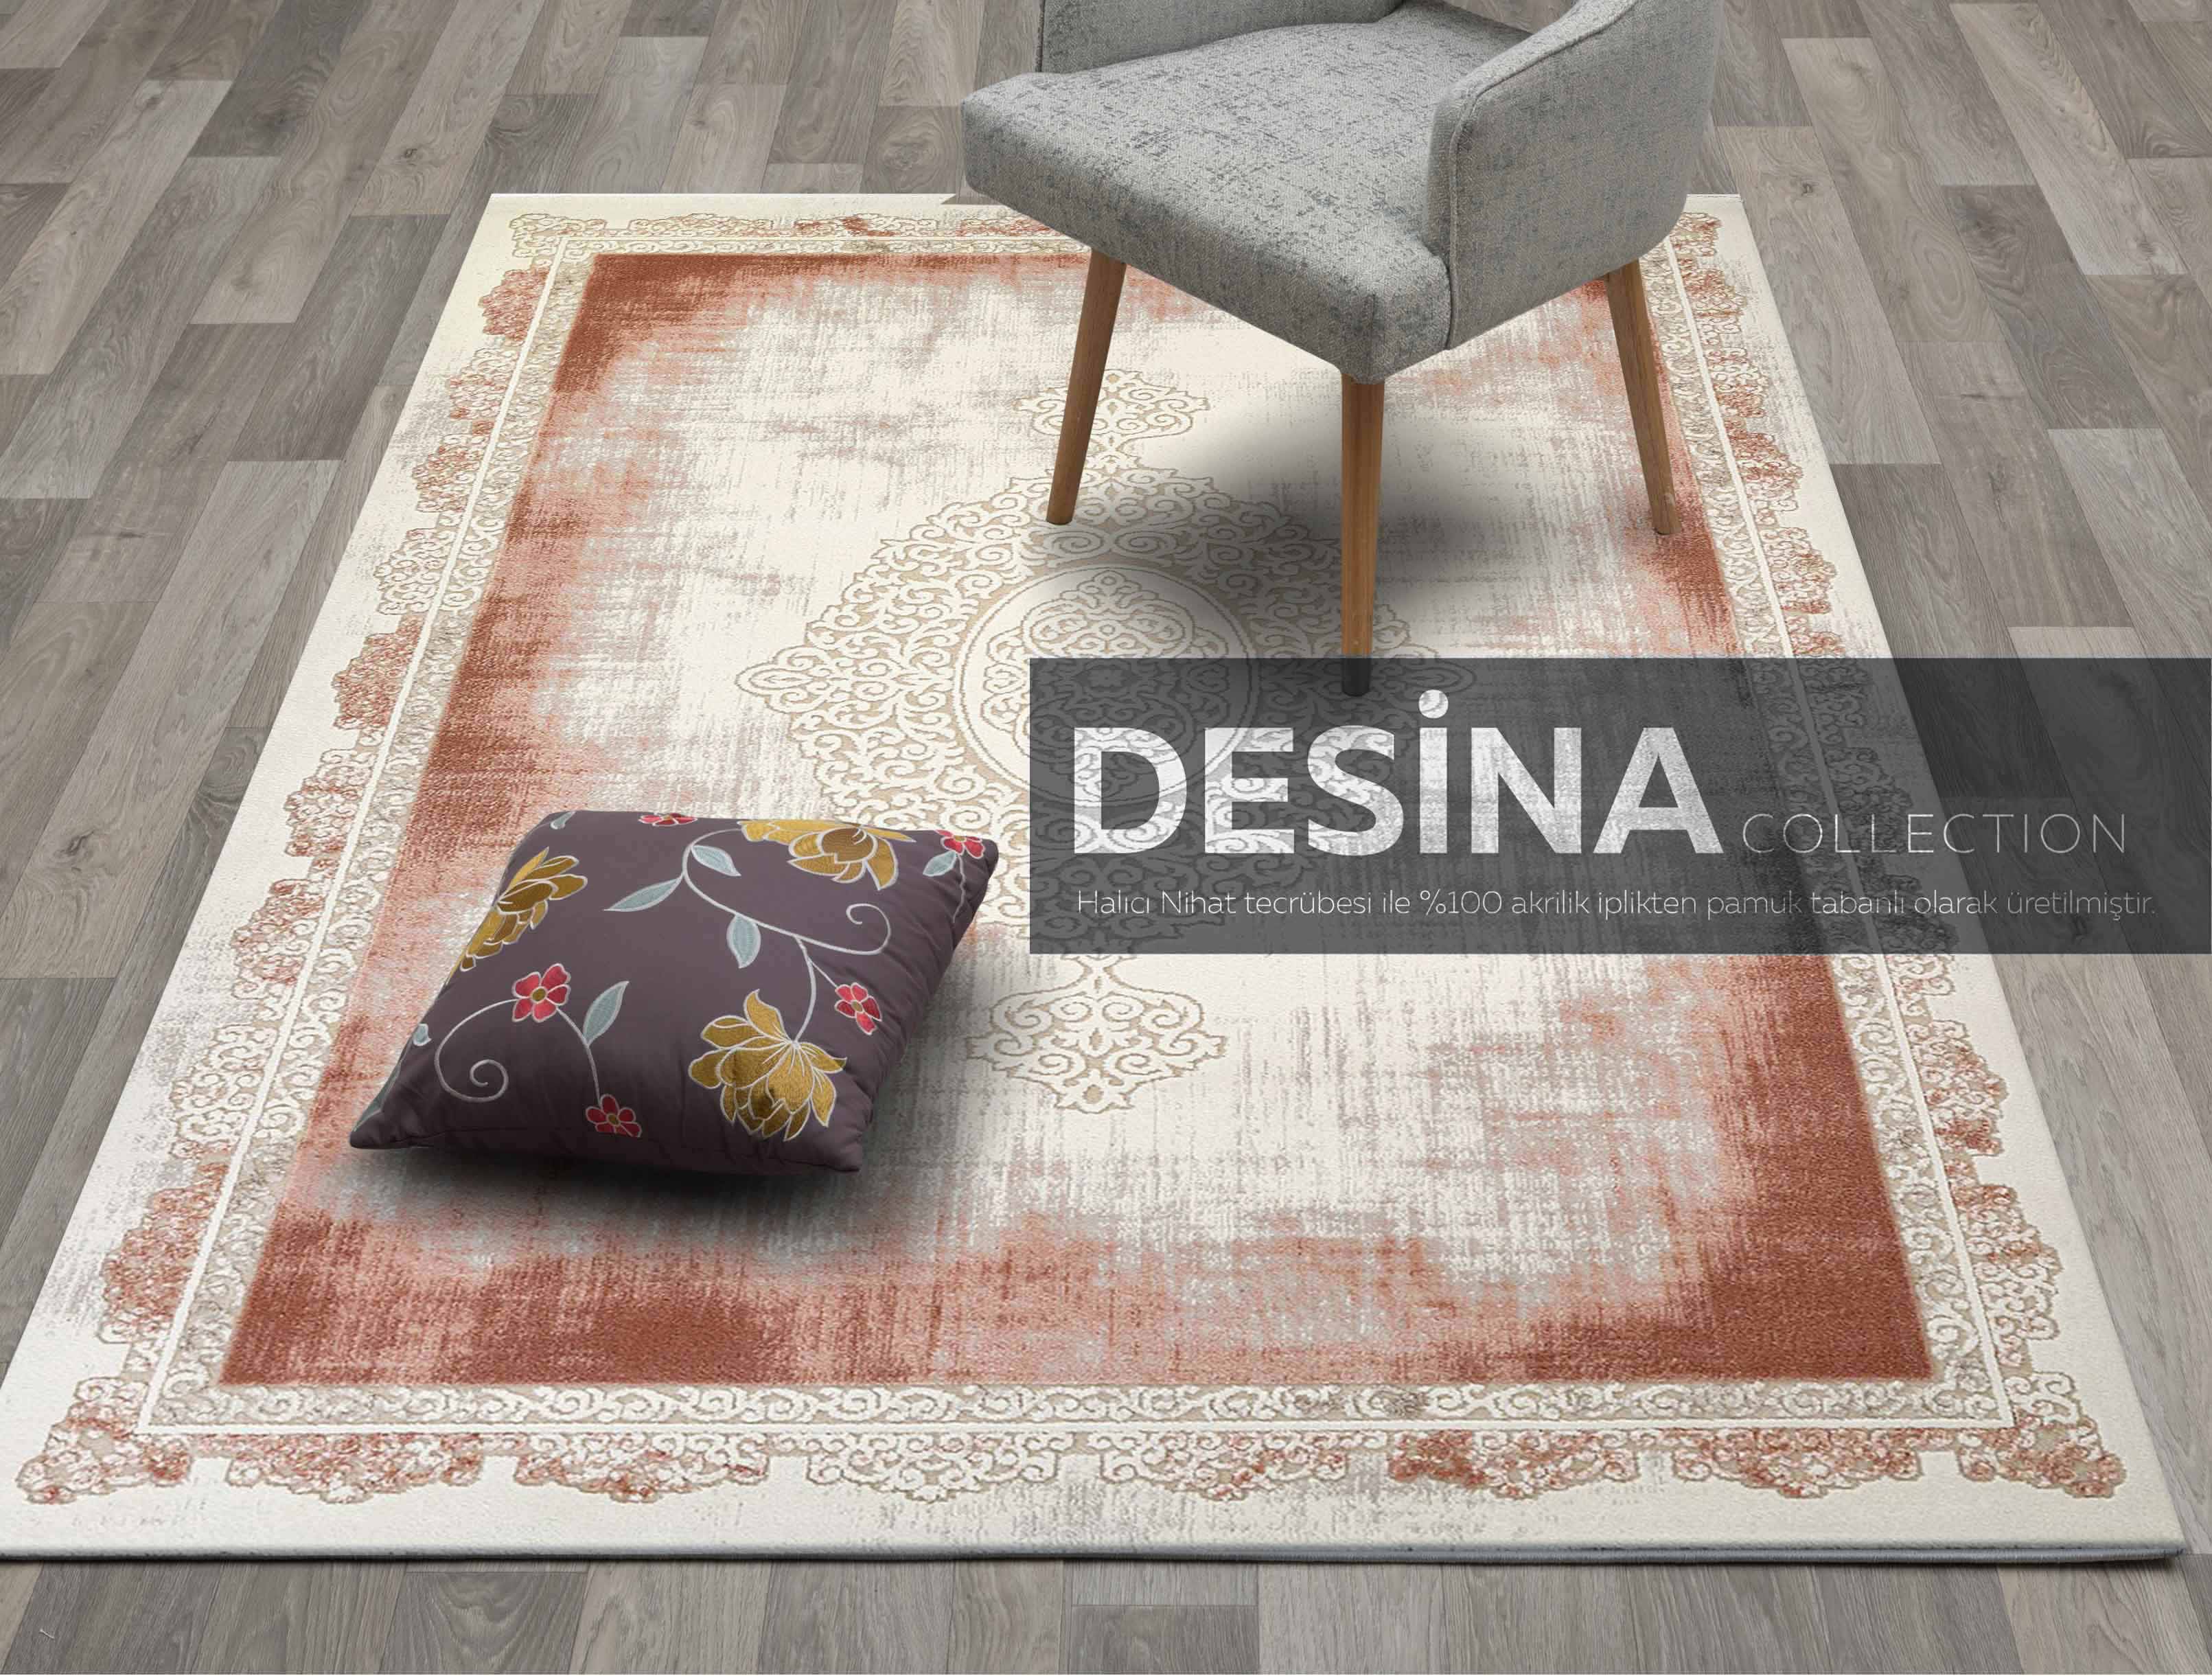 Desina Collection